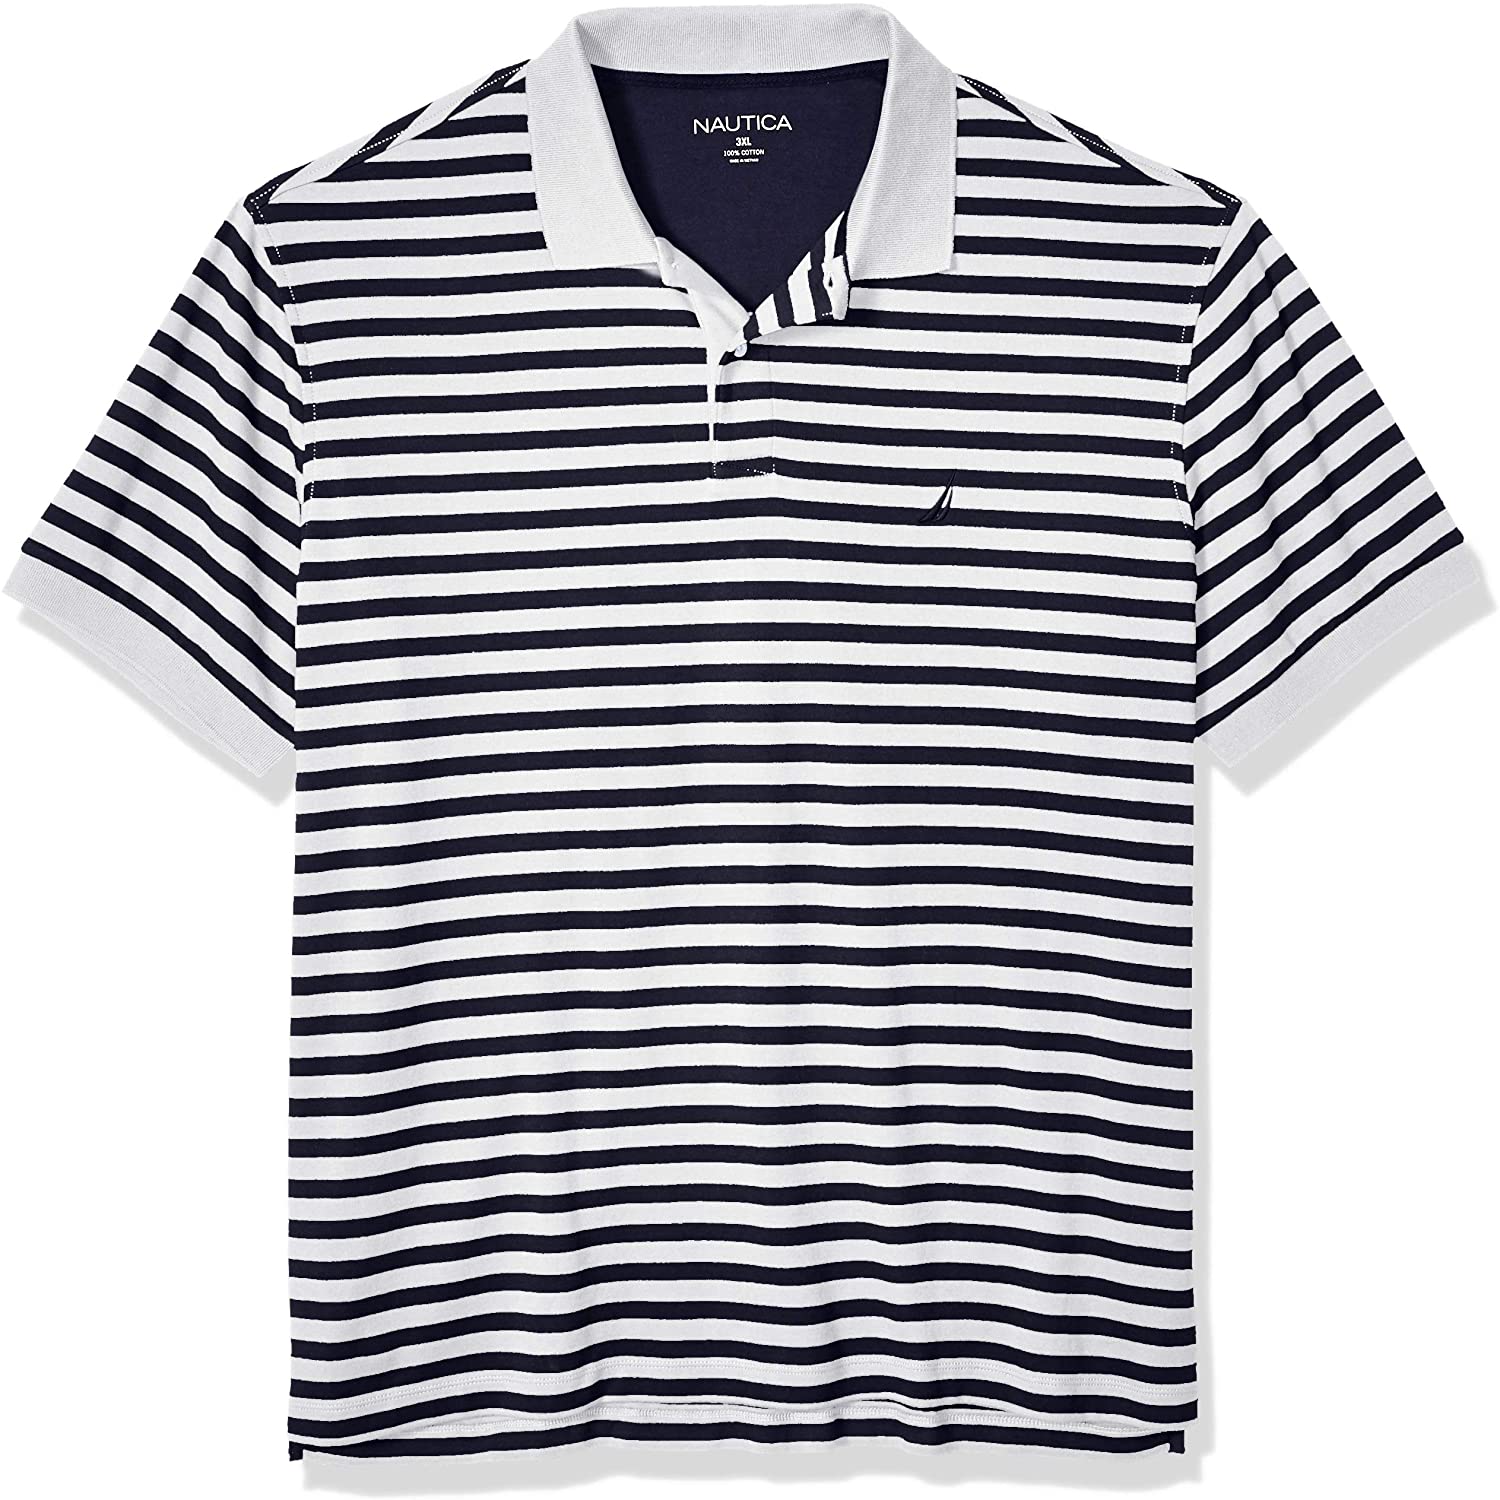 Nautica Men's Classic Fit Short Sleeve 100% Cotton Pique Stripe Polo Shirt 